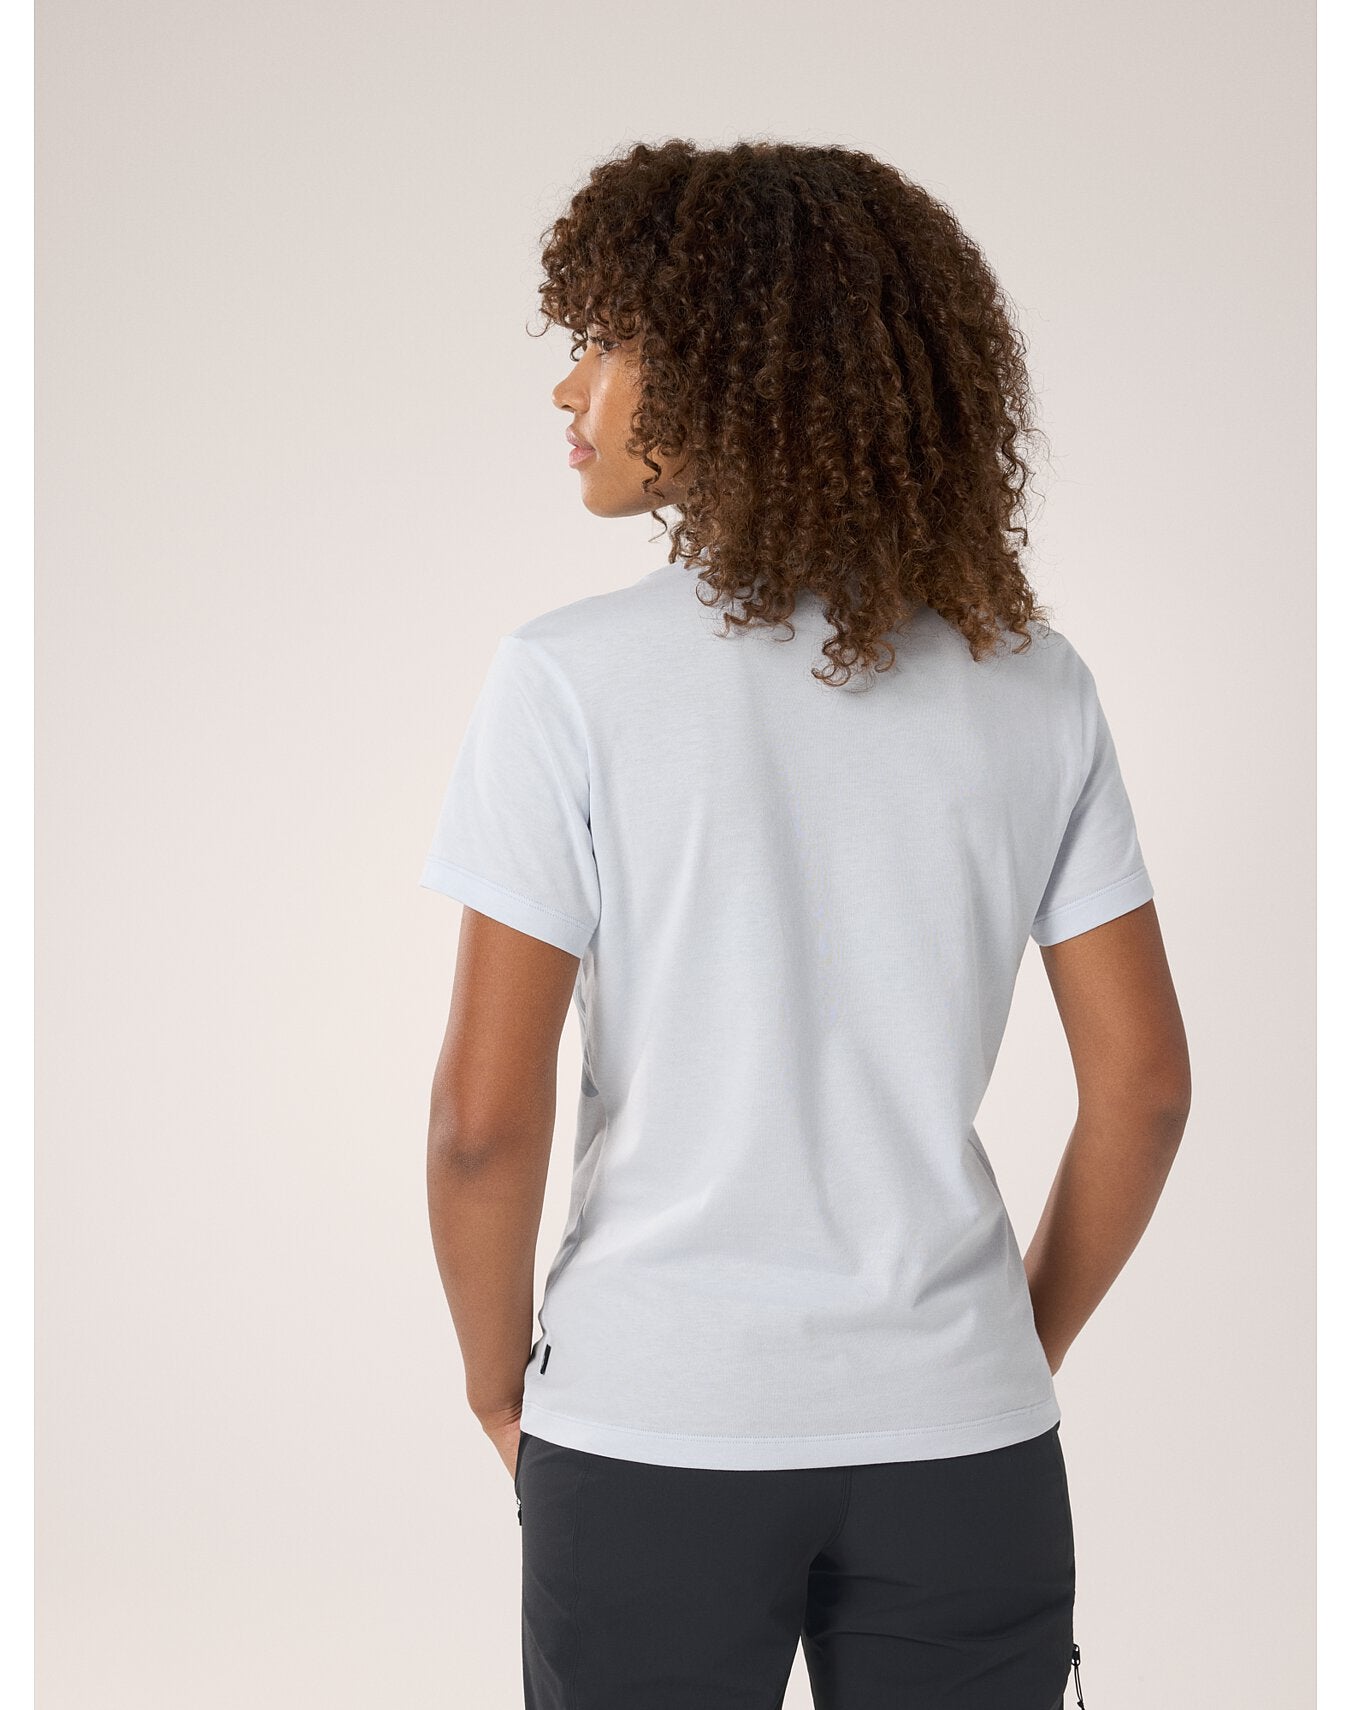 Arc'teryx Women's Bird Cotton T-Shirt